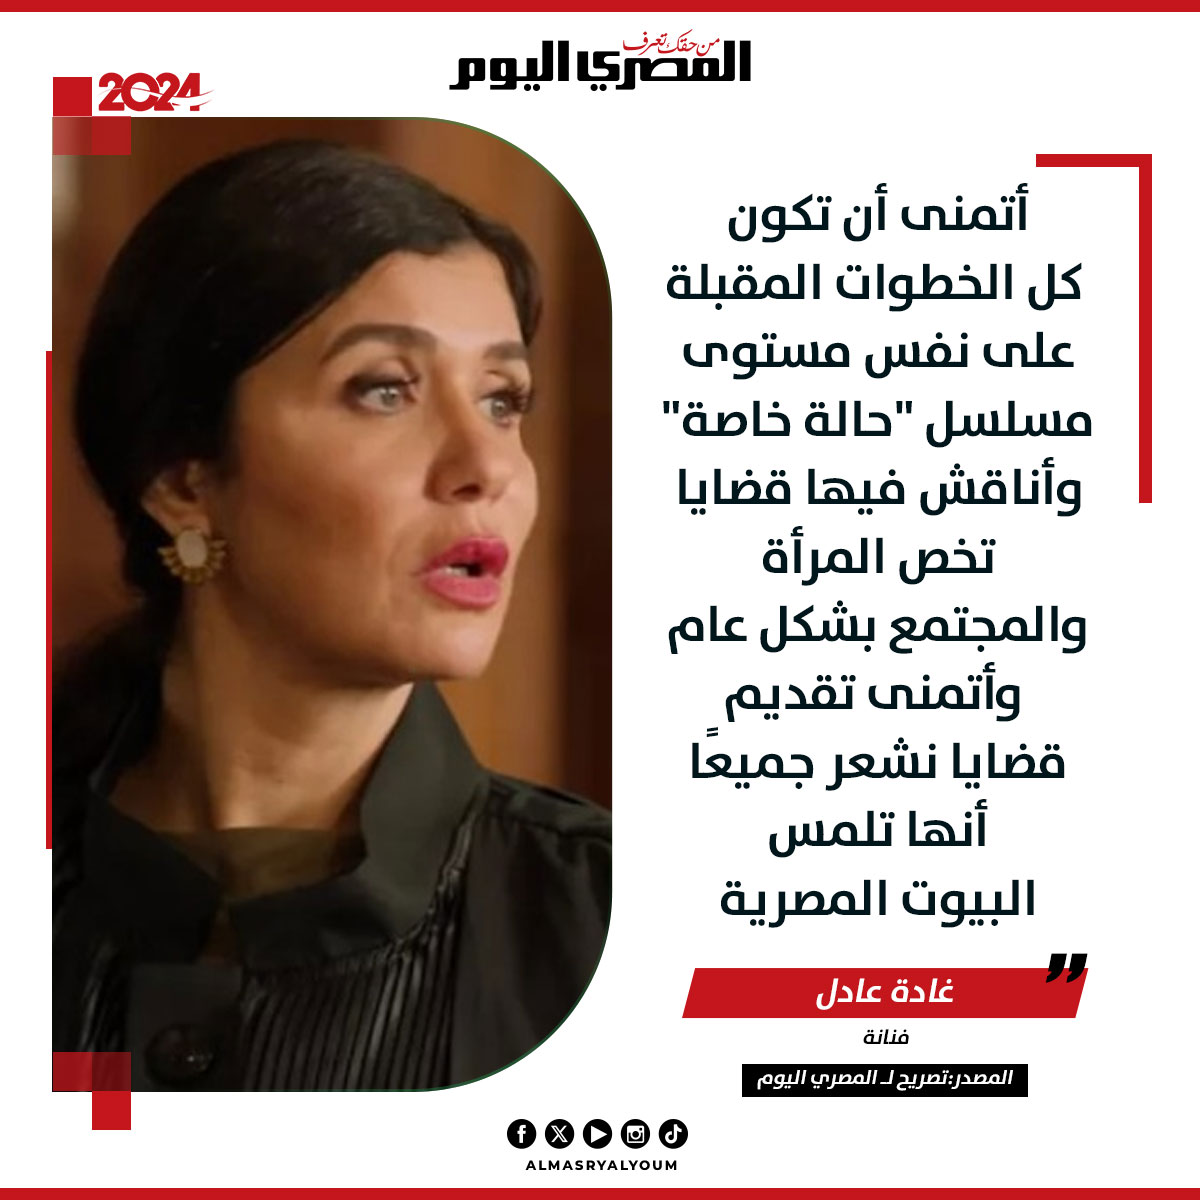 #غادة_عادل لـ المصري اليوم: اتمنى تقديم أعمال أناقش فيها قضايا تخص المرأة